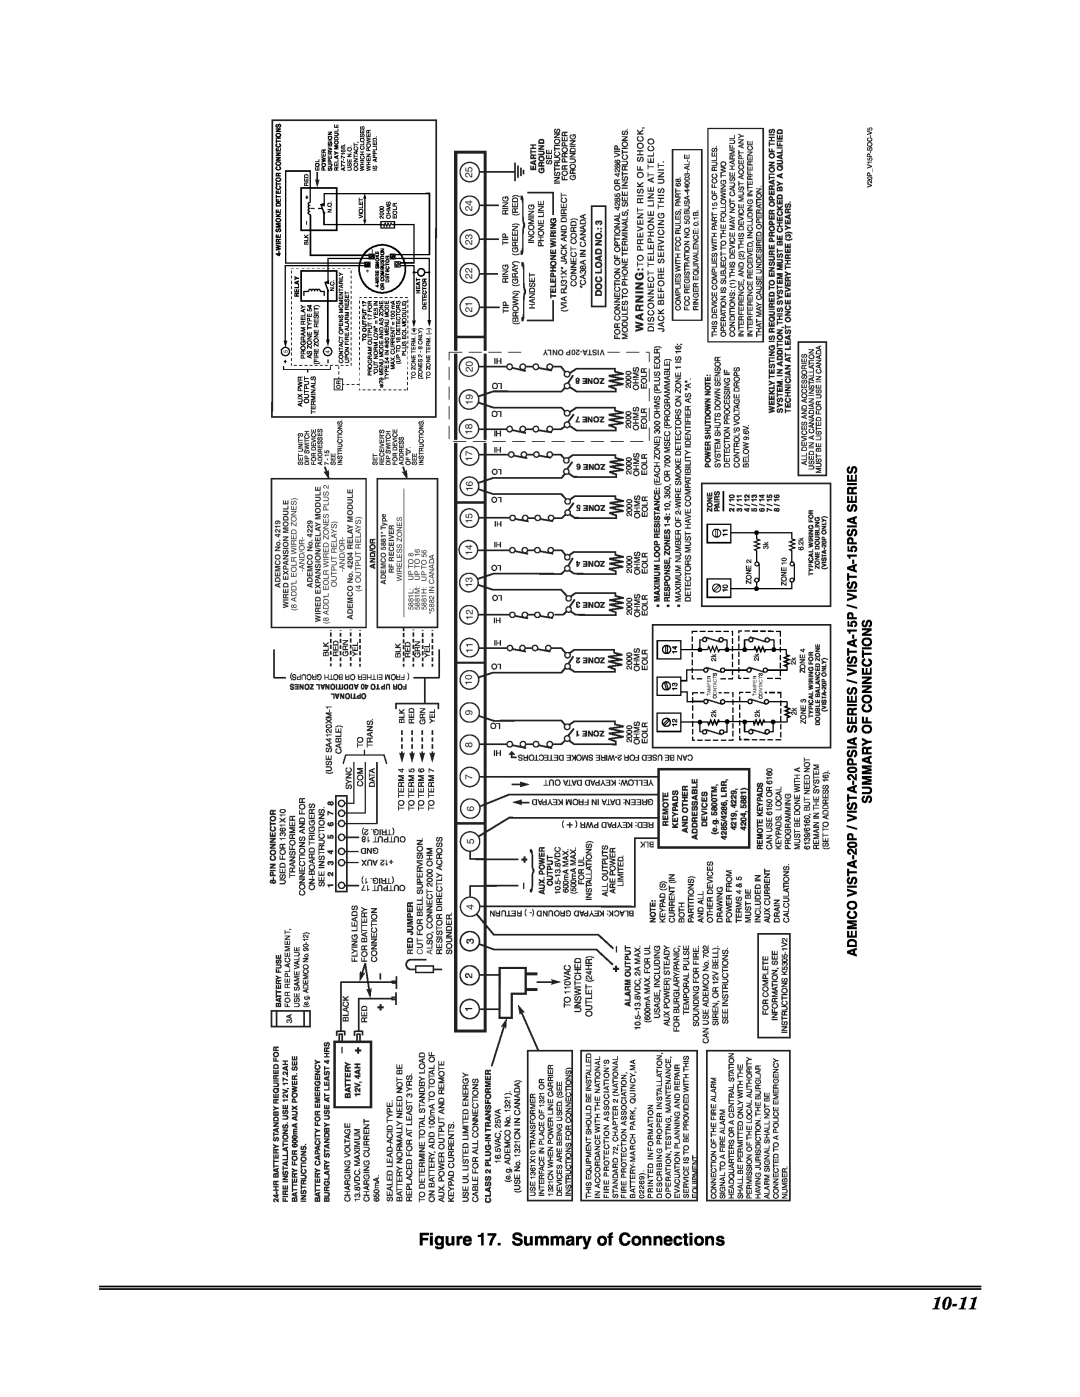 Honeywell VISTA 20P, VISTA-20PSIA, VISTA-15P, VISTA-15PSIA 10-11, Summary of Connections, Summary Of Connections 